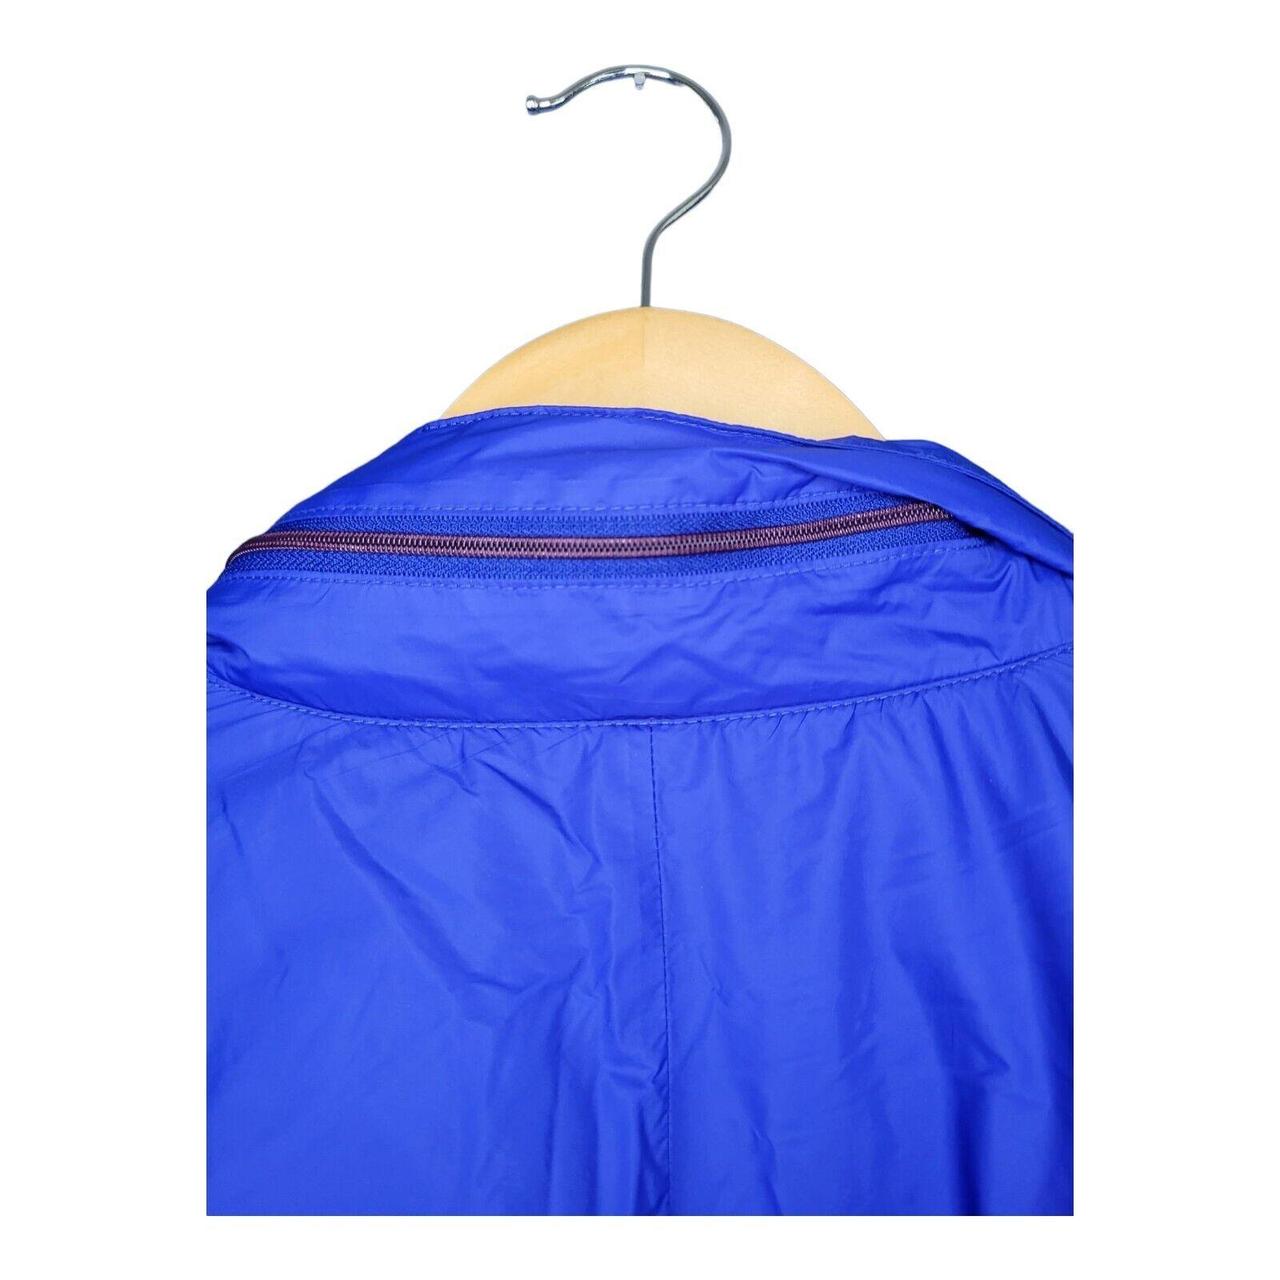 Fred Perry Men’s Blue Waterproof Windbreaker Jacket... - Depop